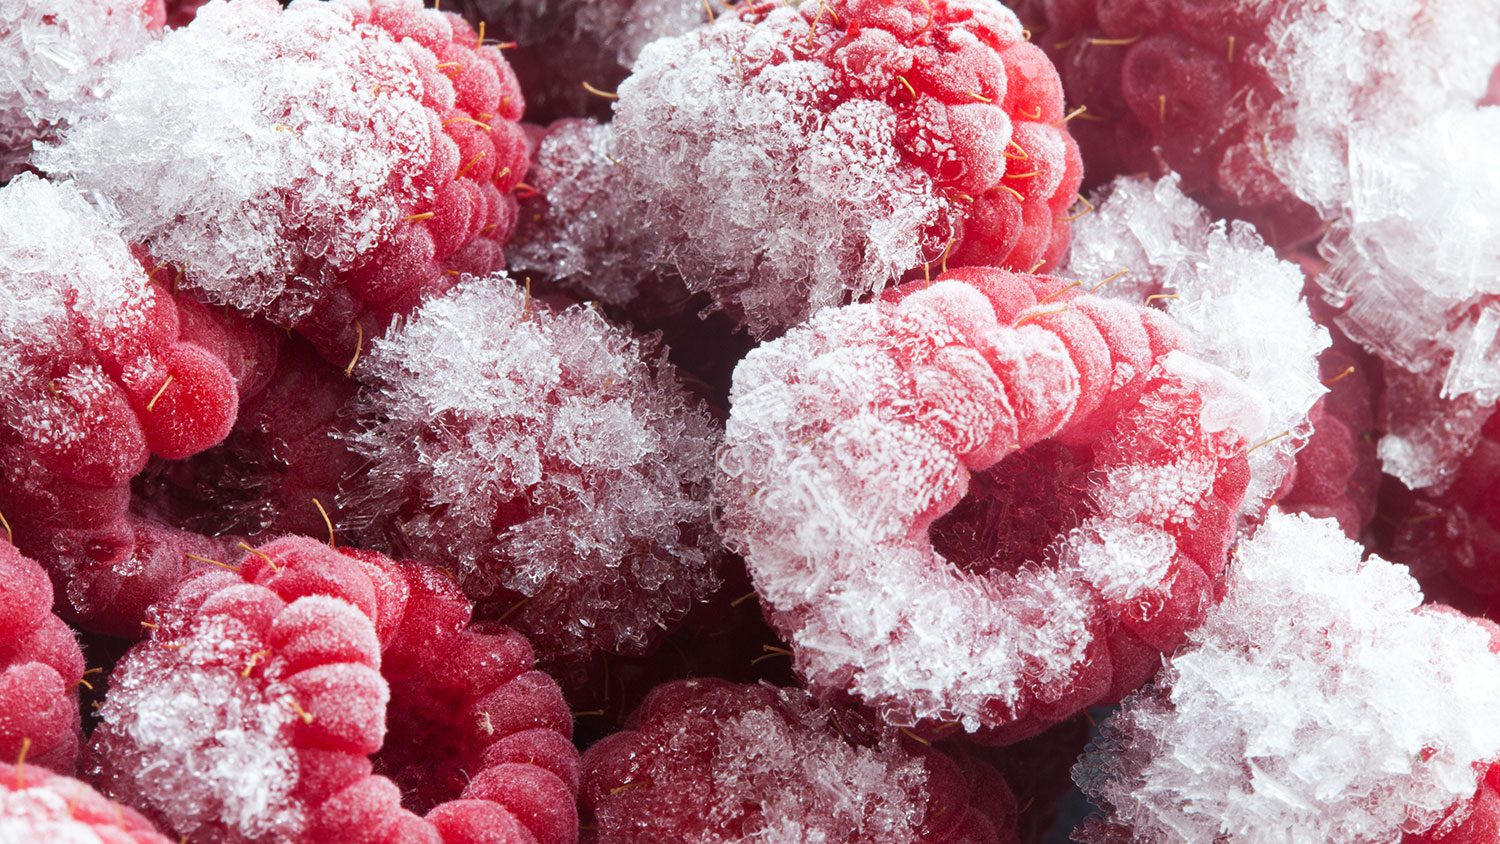 Freezer-burned berries